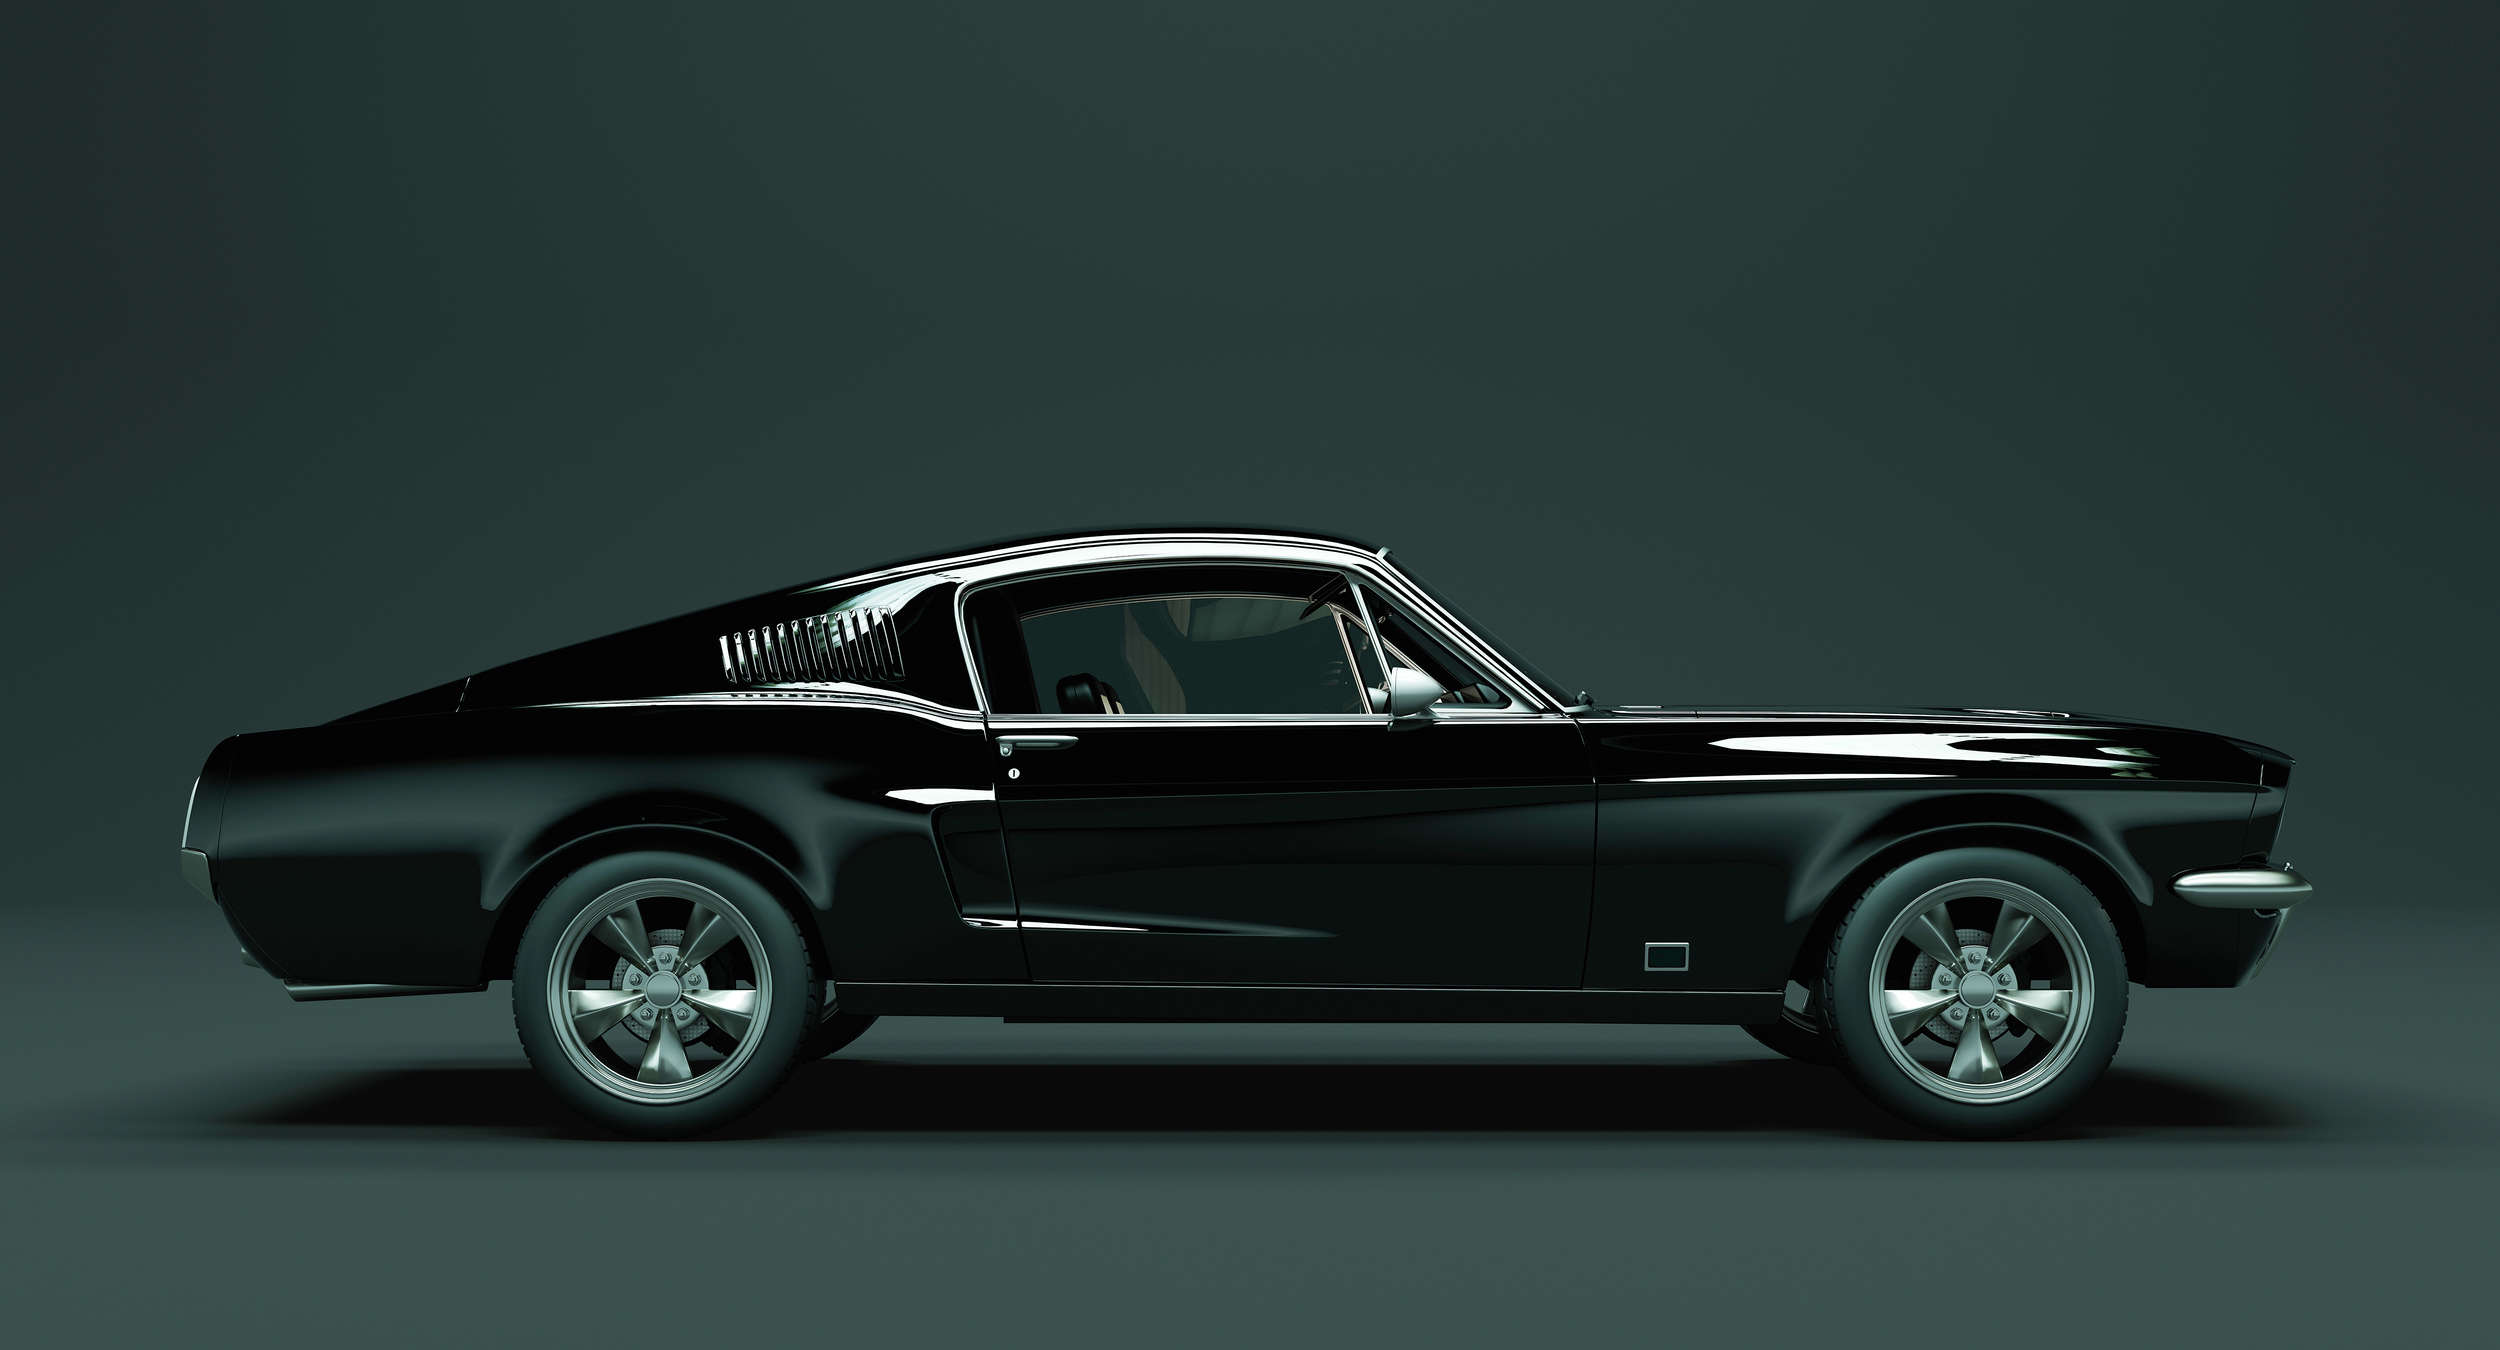             Mustang 1 - papier peint, vue latérale Mustang, vintage - bleu, noir | Premium intissé lisse
        